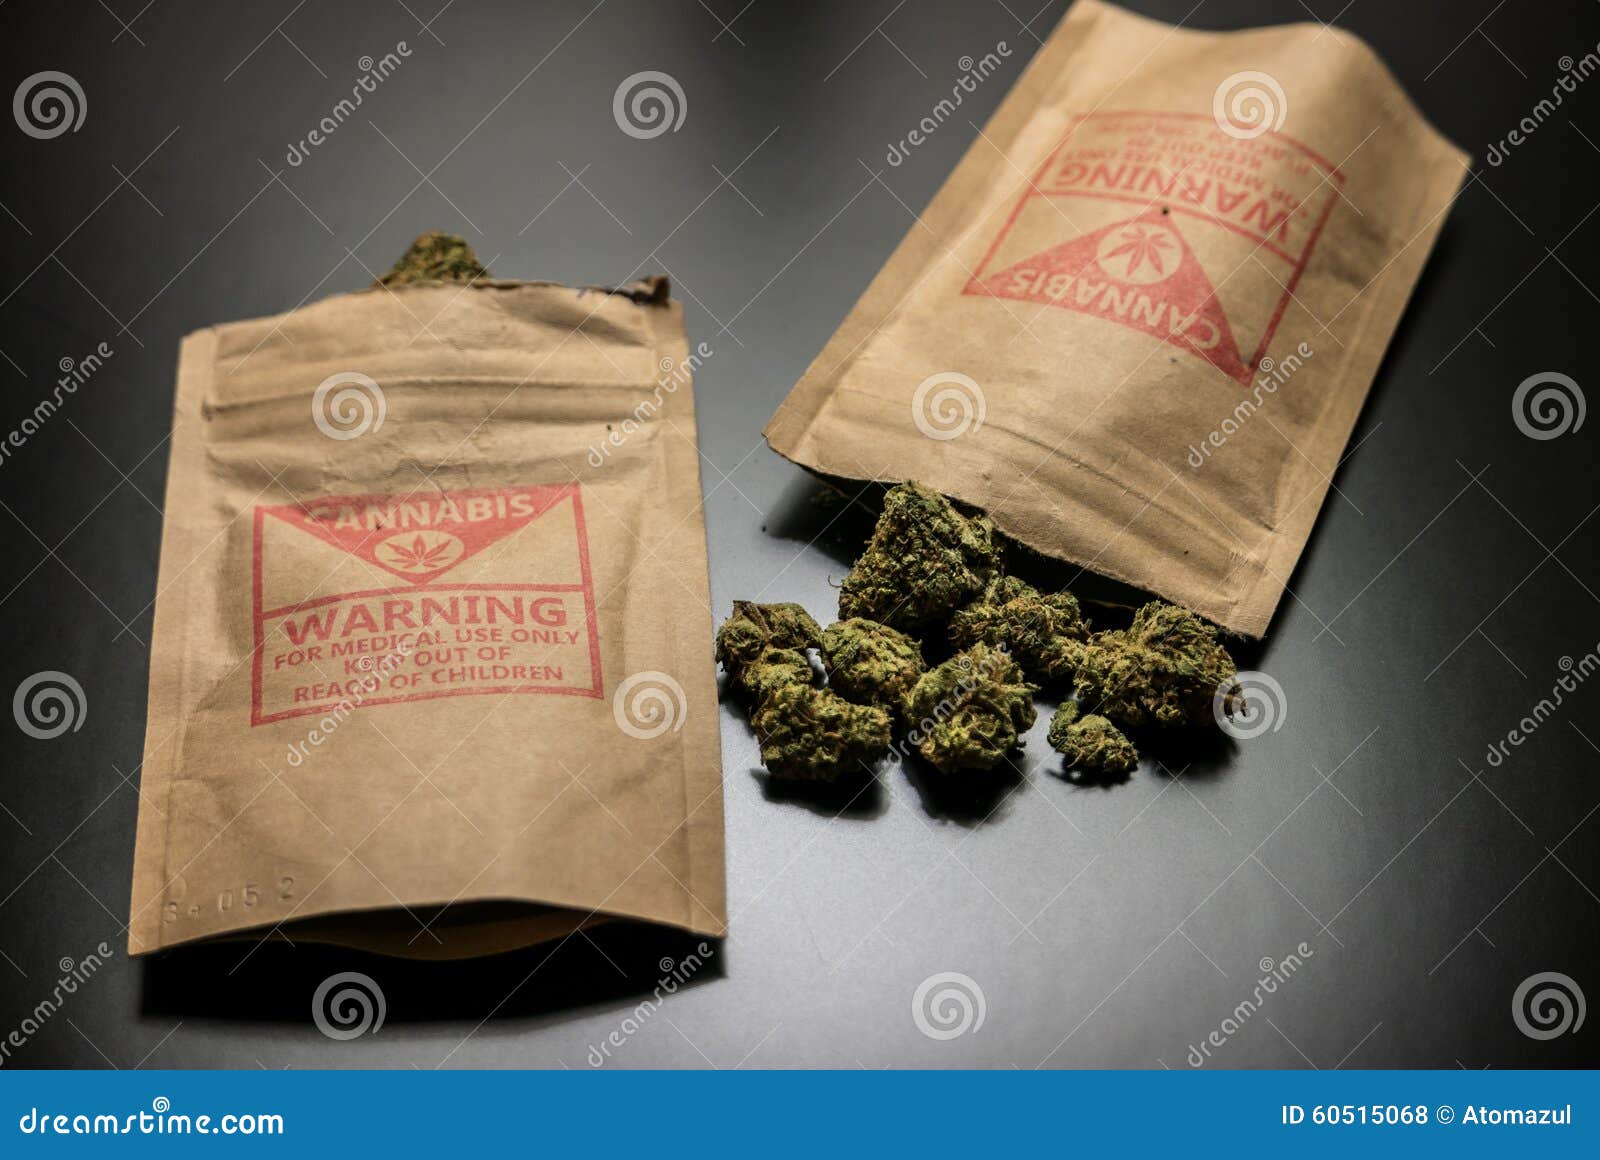 пакетики для марихуаны